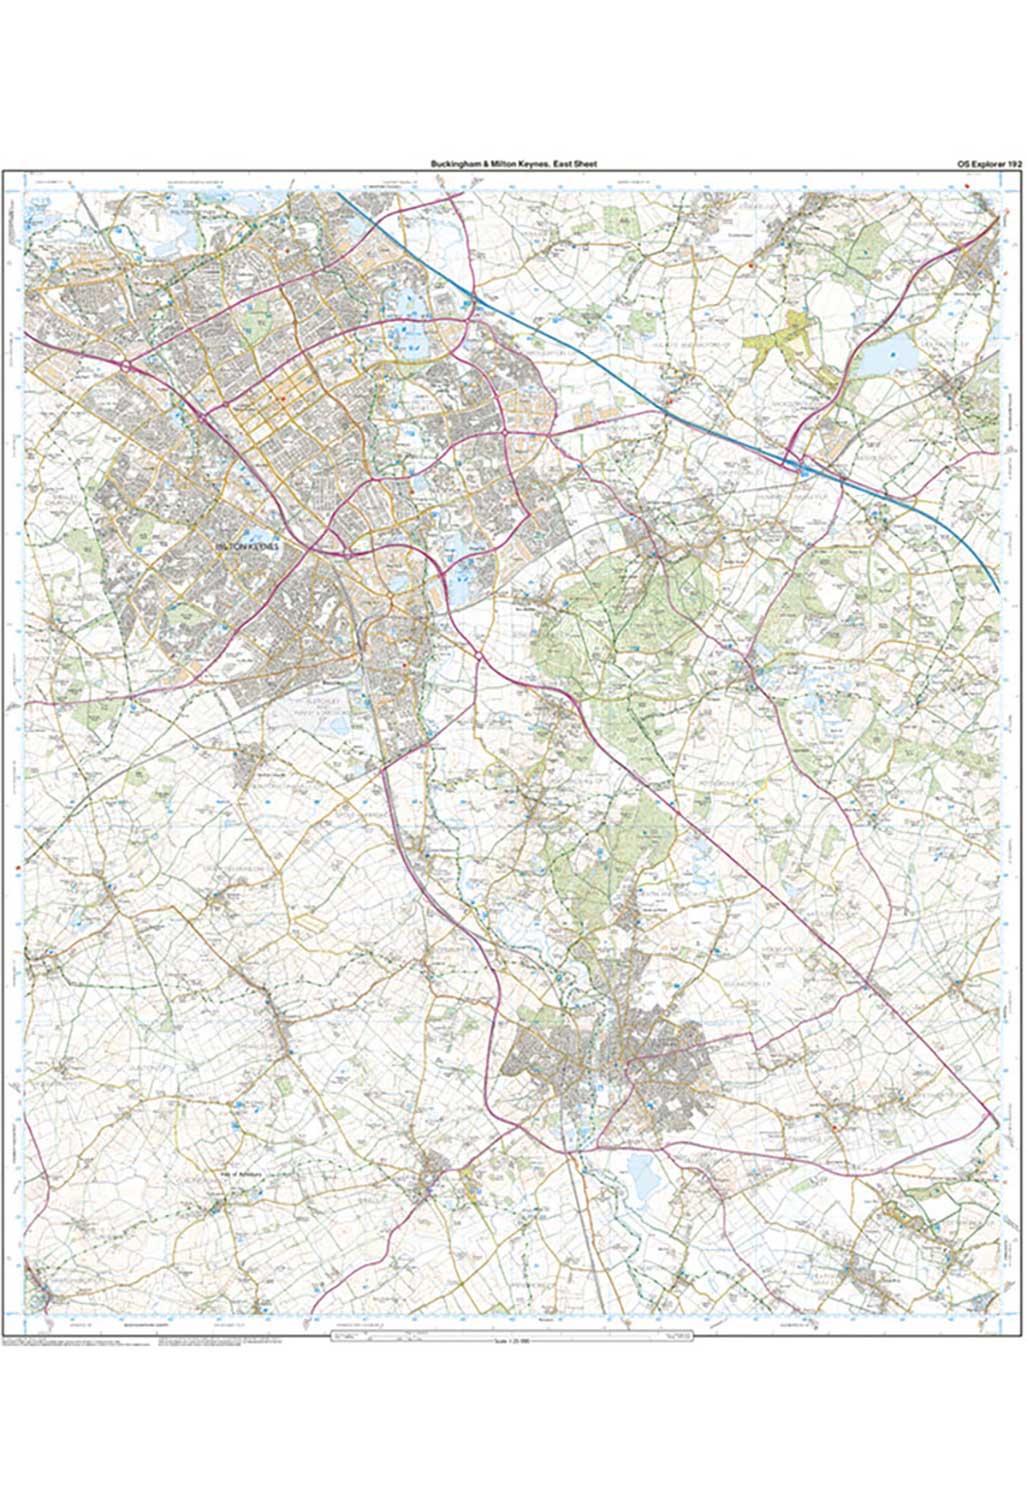 Ordnance Survey Buckingham & Milton Keynes - OS Explorer 192 Map